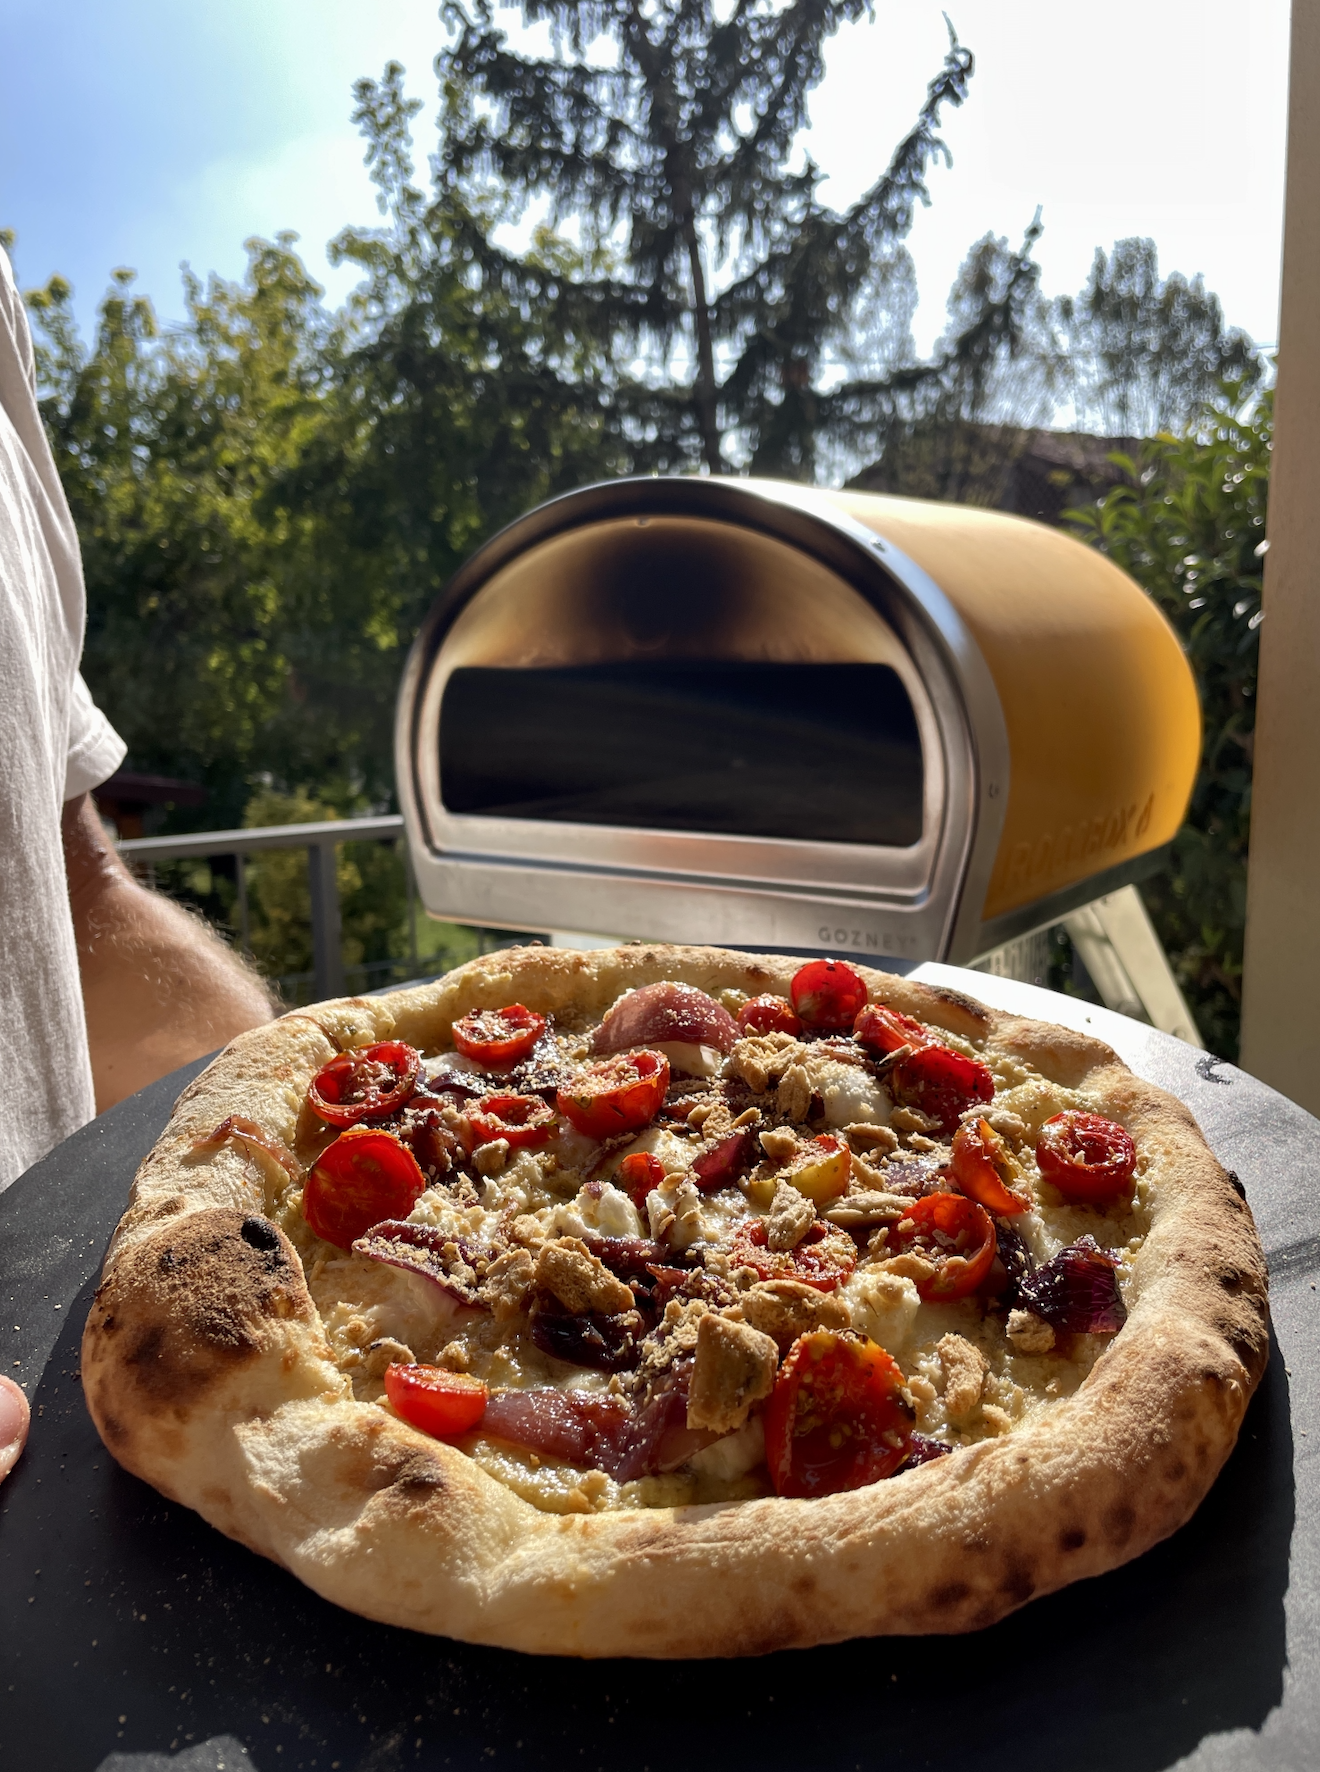 sourdough pizza expert consultant recipe creator chef andrea danelli from sri lanka england italy europe @theheartofpizza on instagram social media 6